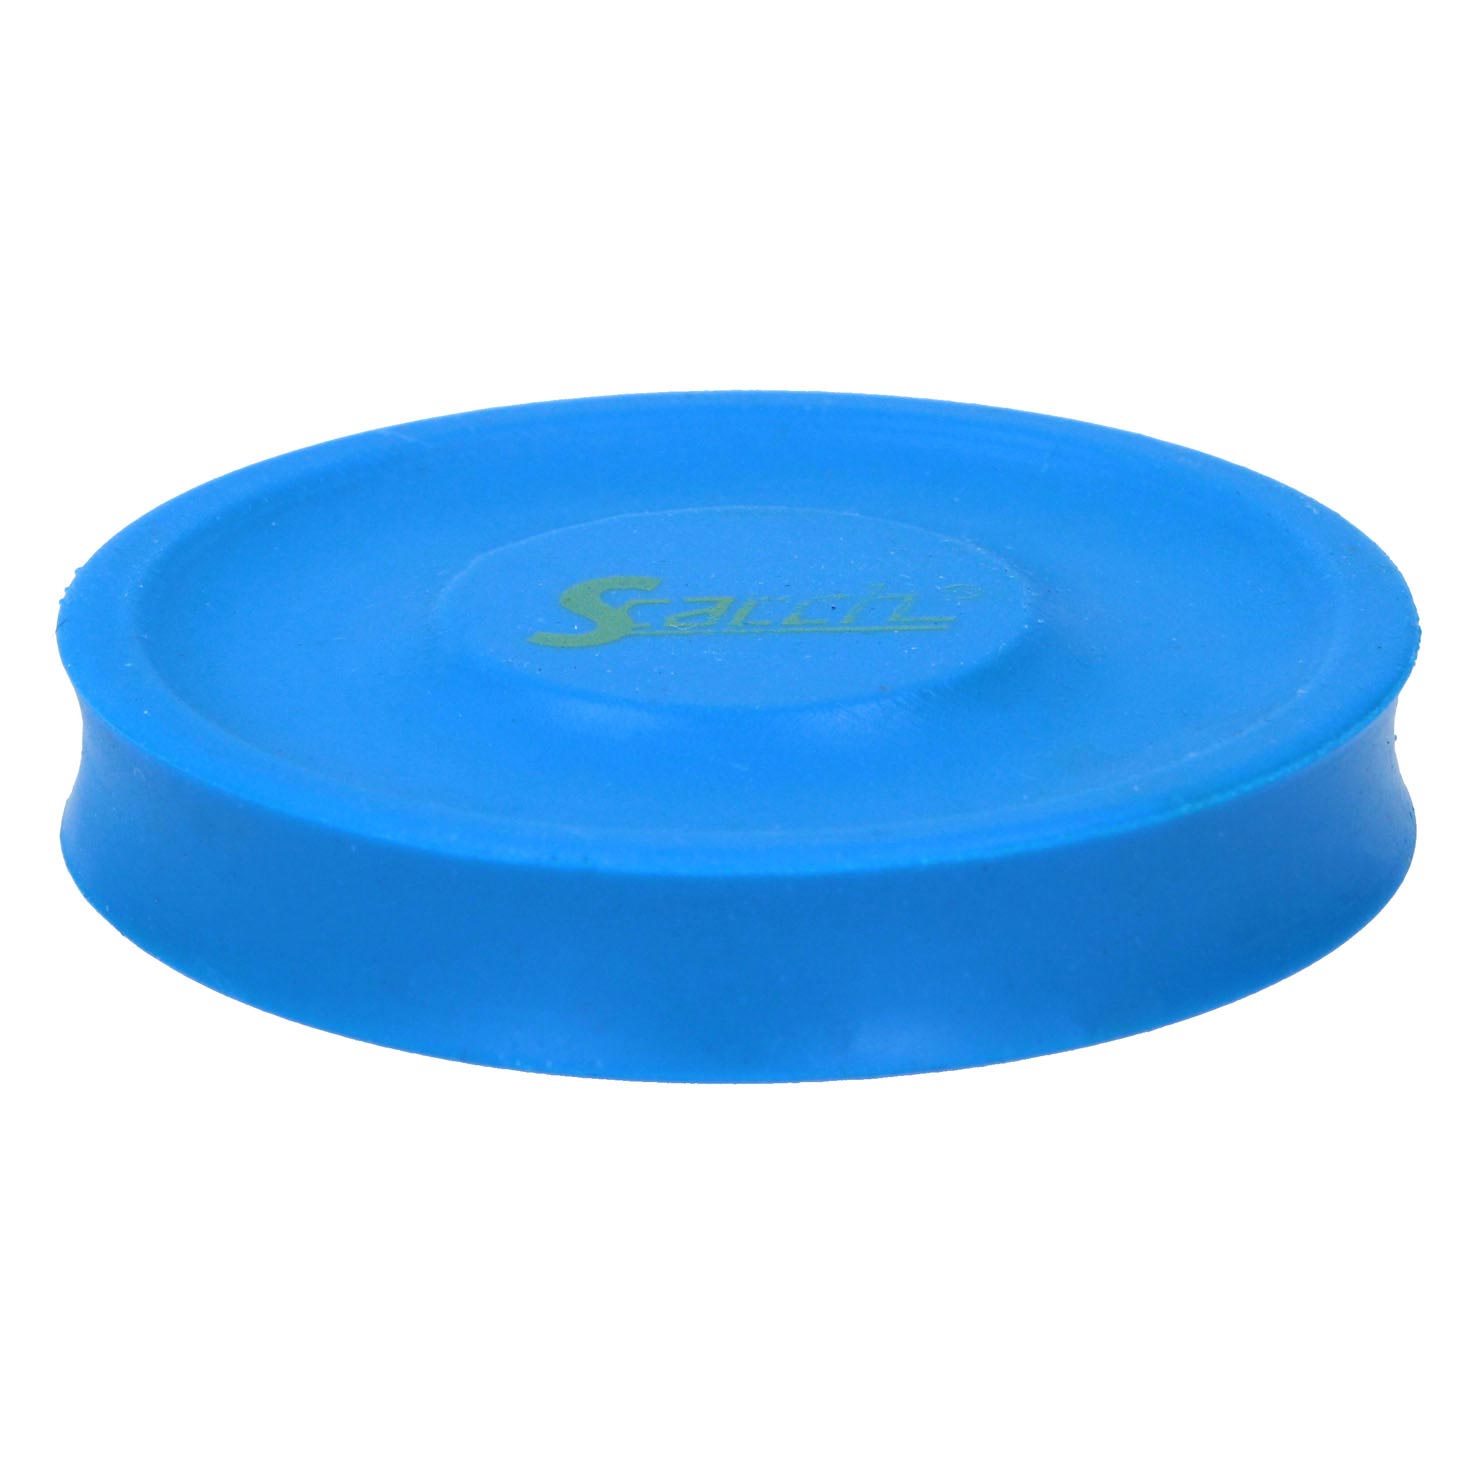 Scatch Frisbee, 2 Stk.